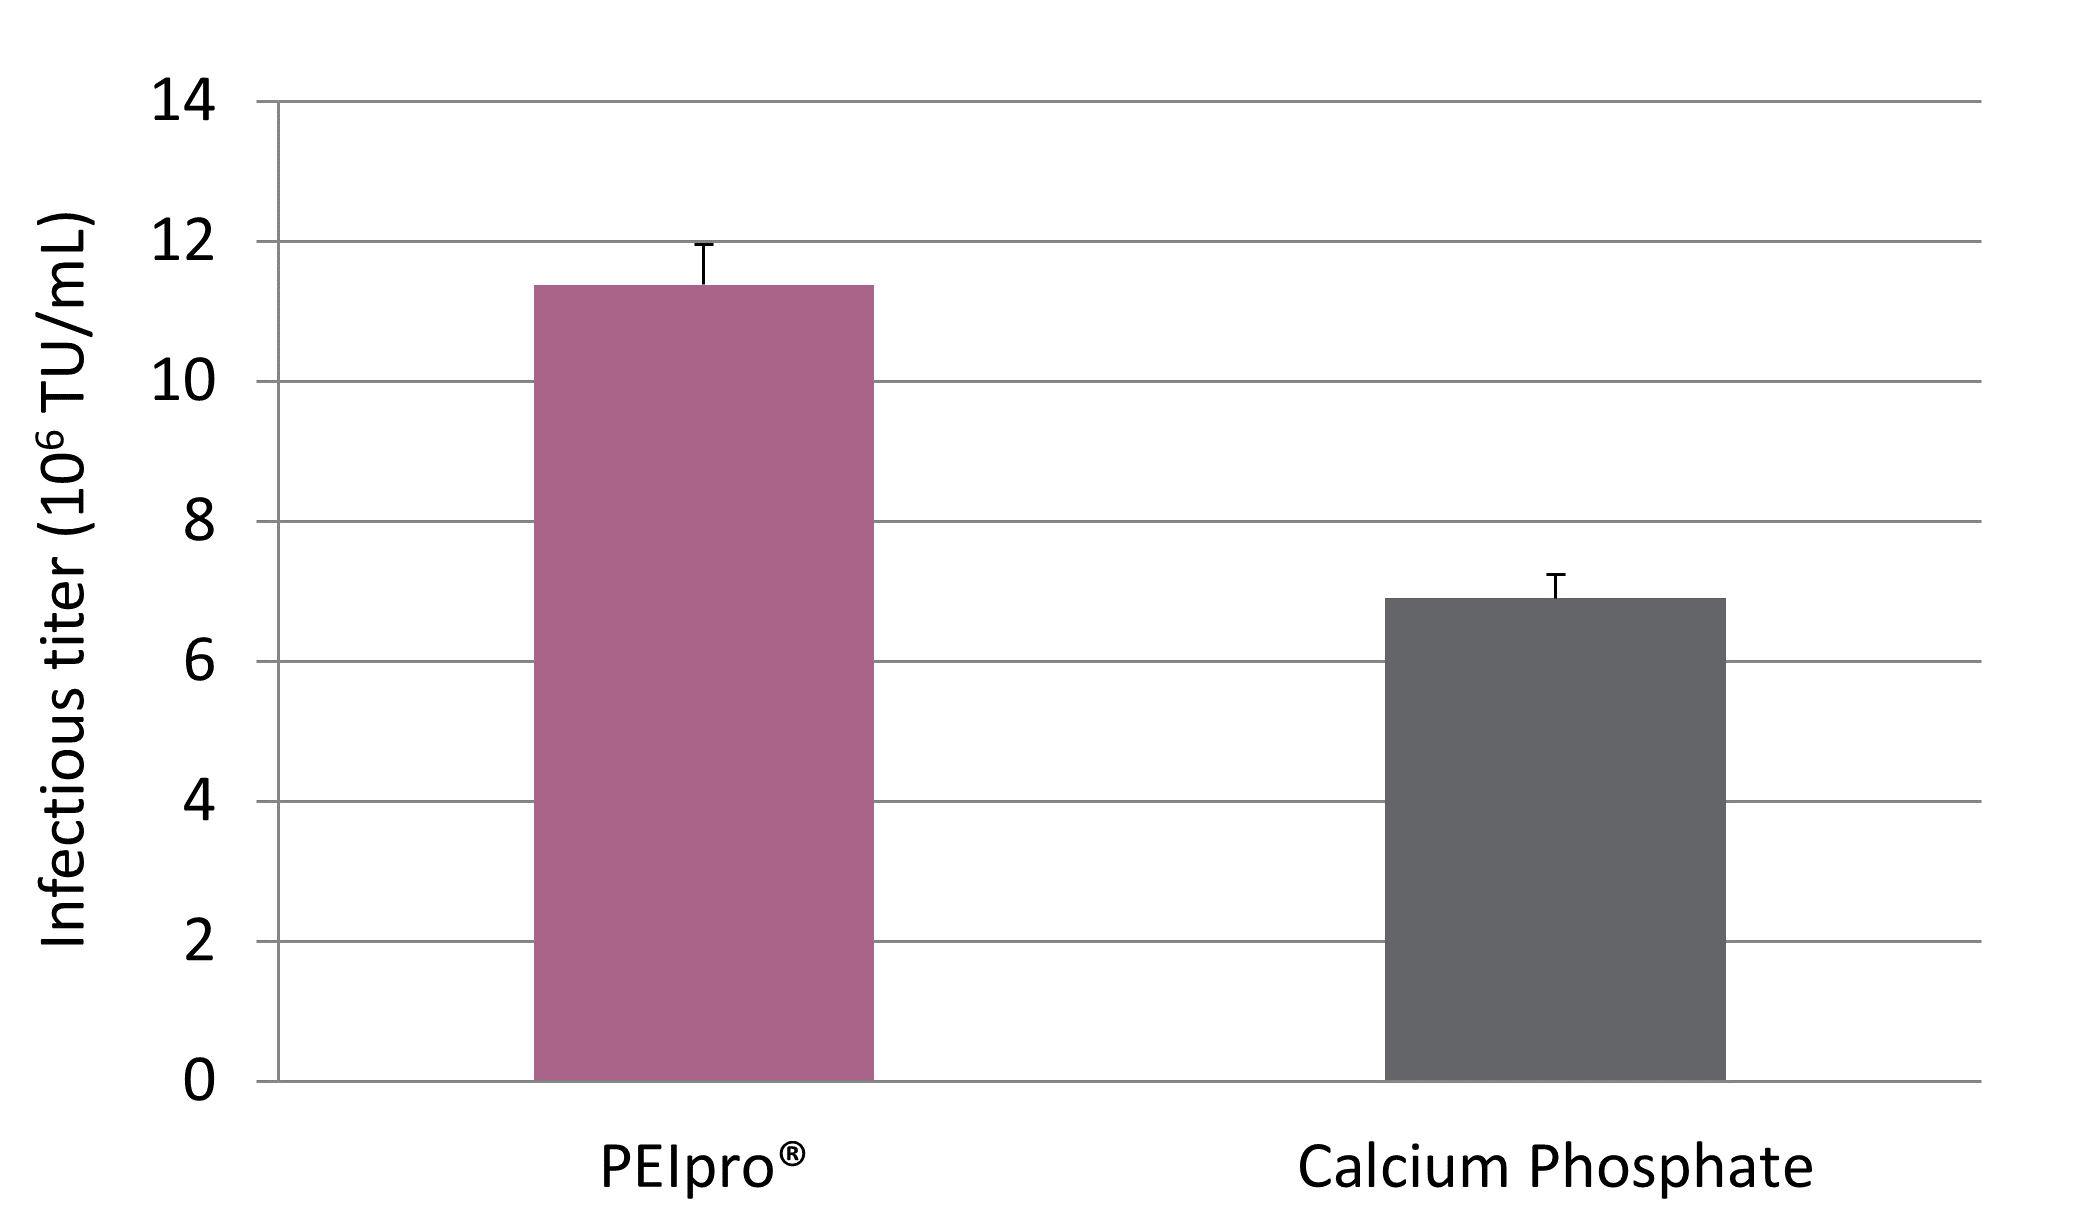 PEIpro - Comparison CaP